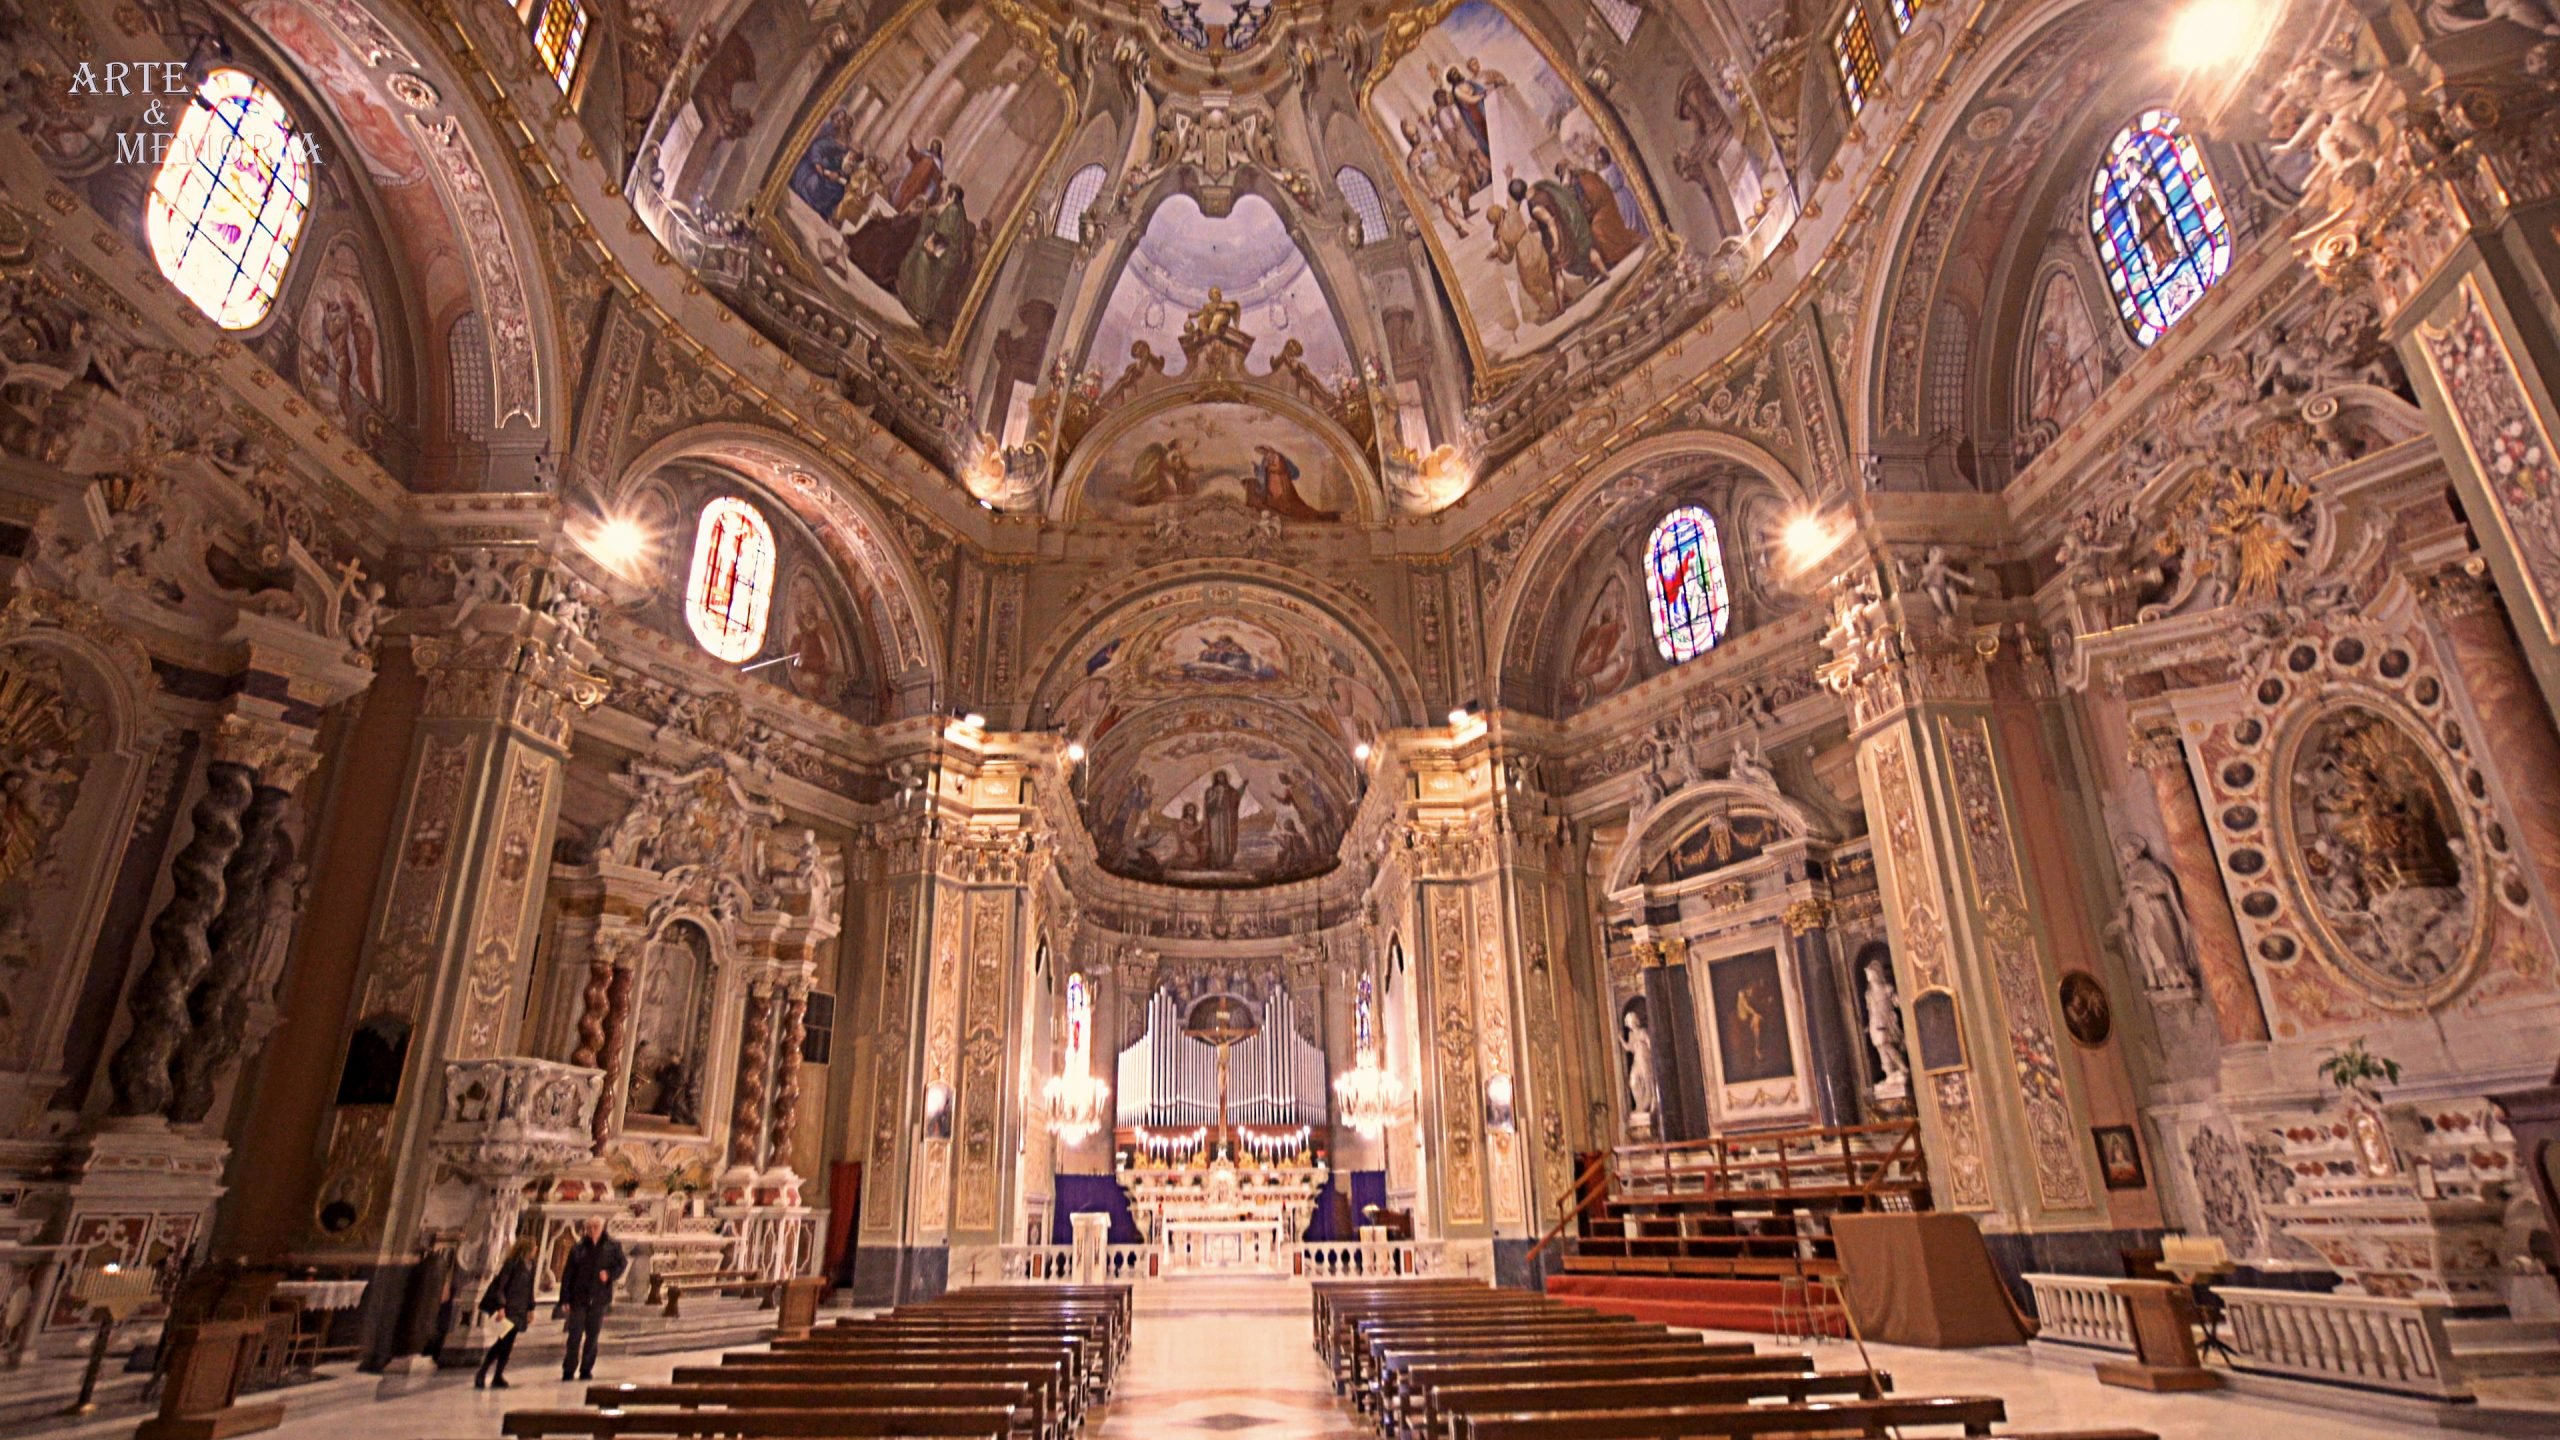 Luce, affreschi e barocco: la sontuosa chiesa dei Santi Nazario e Celso ad Arenzano